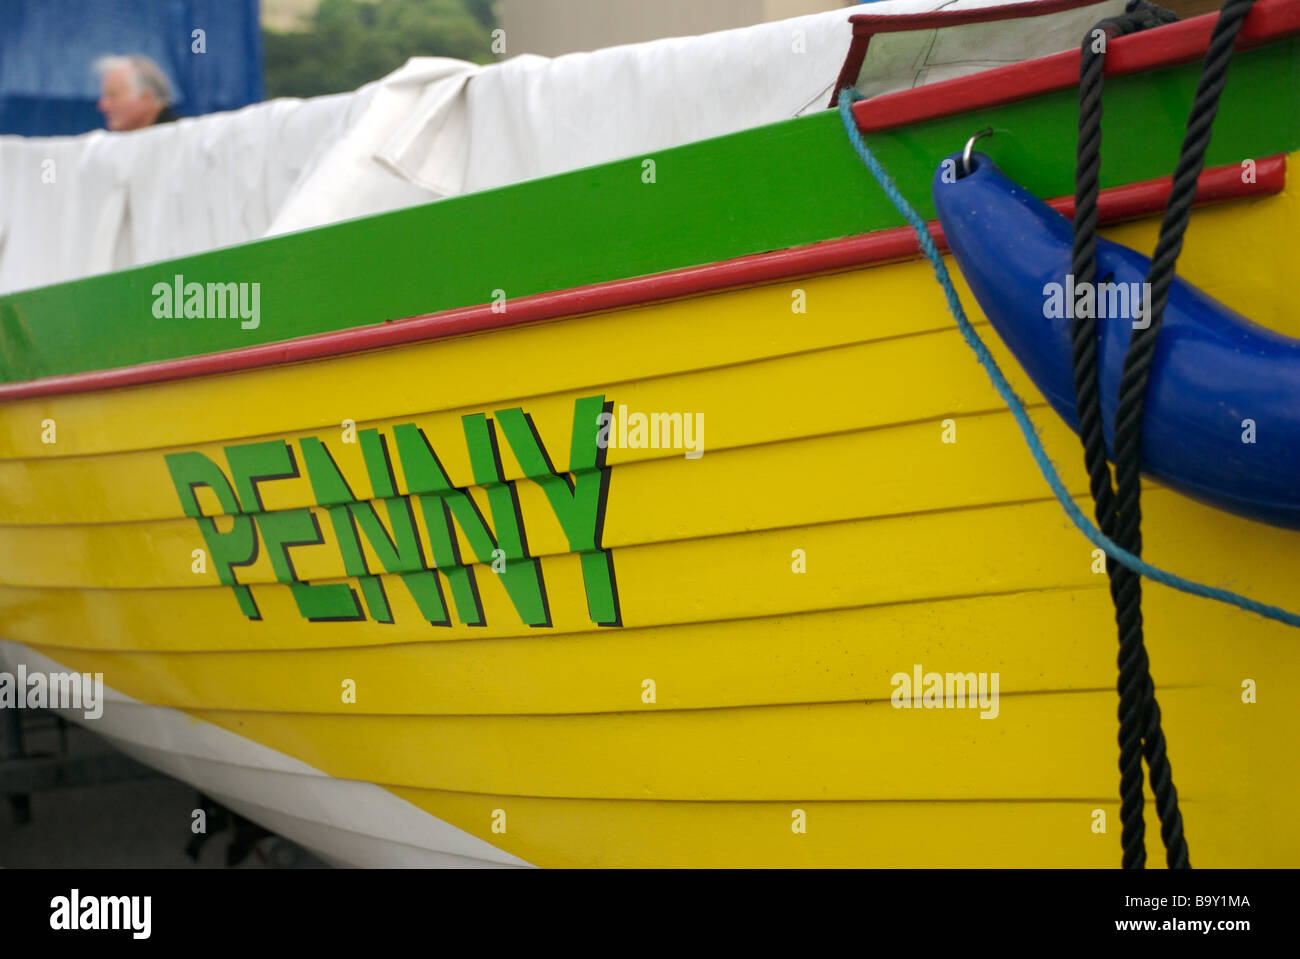 Penny name on a gig racing boat, Saltash, Cornwall, UK Stock Photo